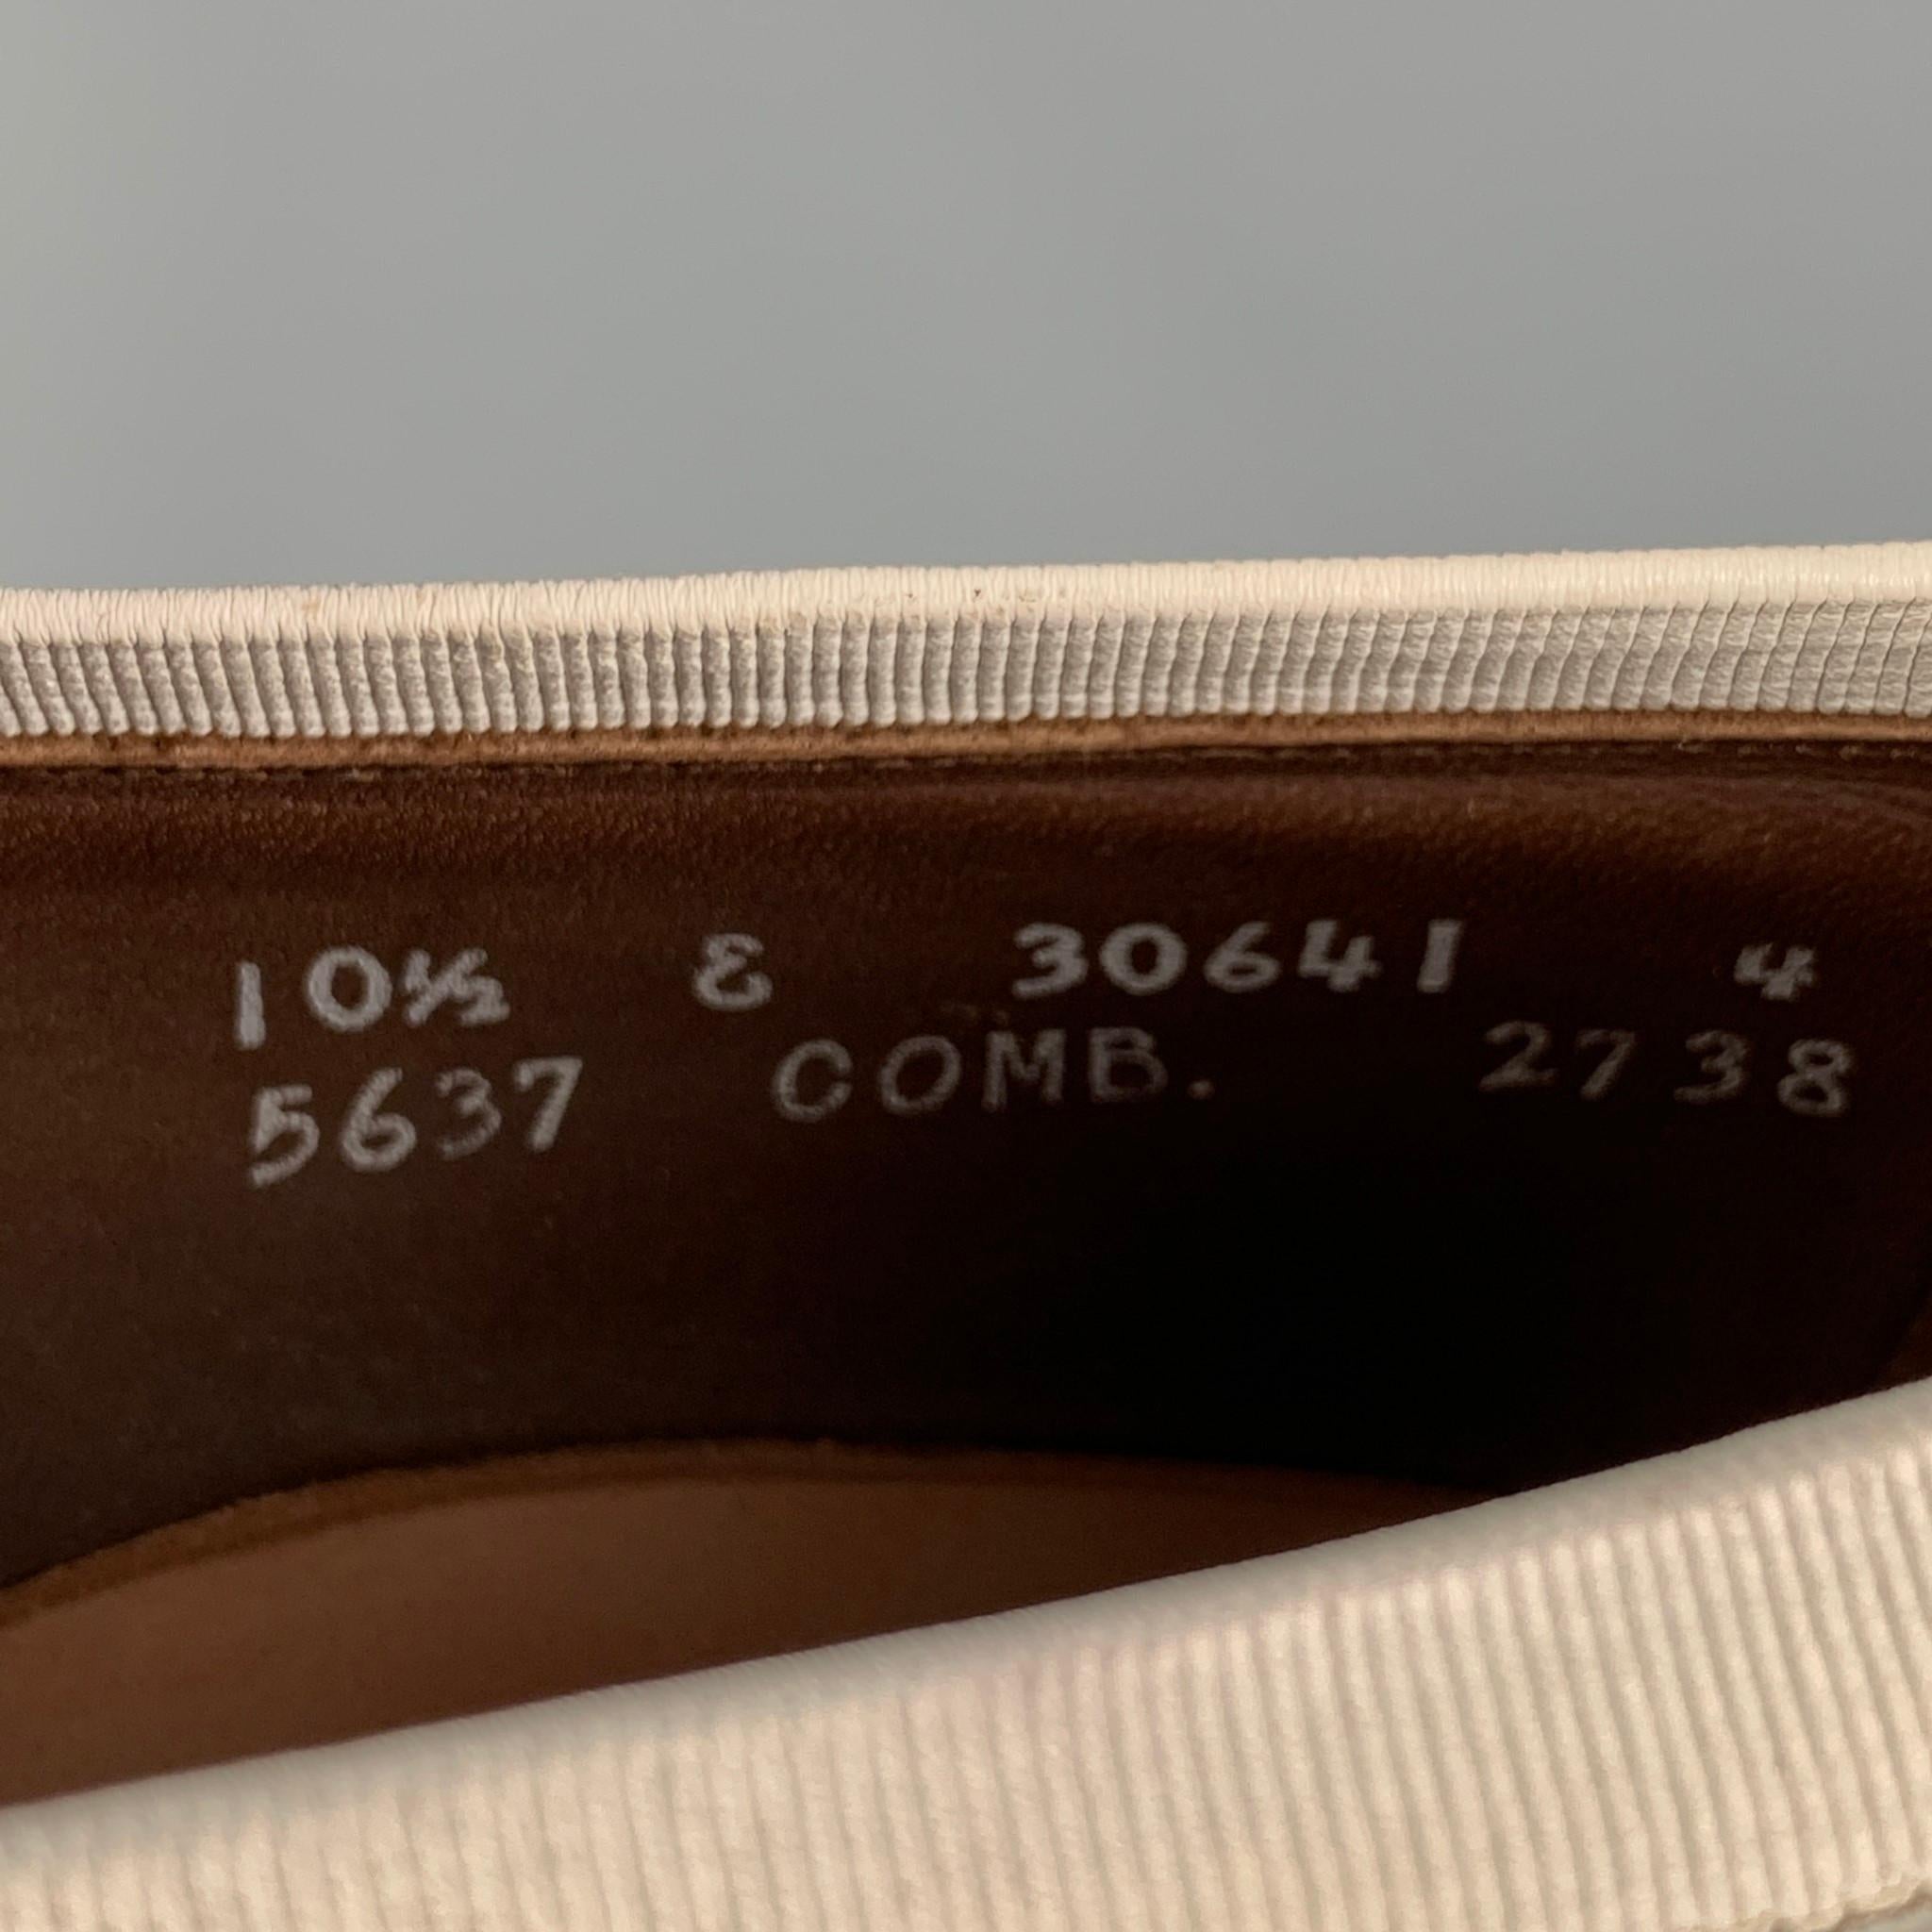 ALLEN EDMONDS Size 10.5 White Leather Tassels Loafers 2